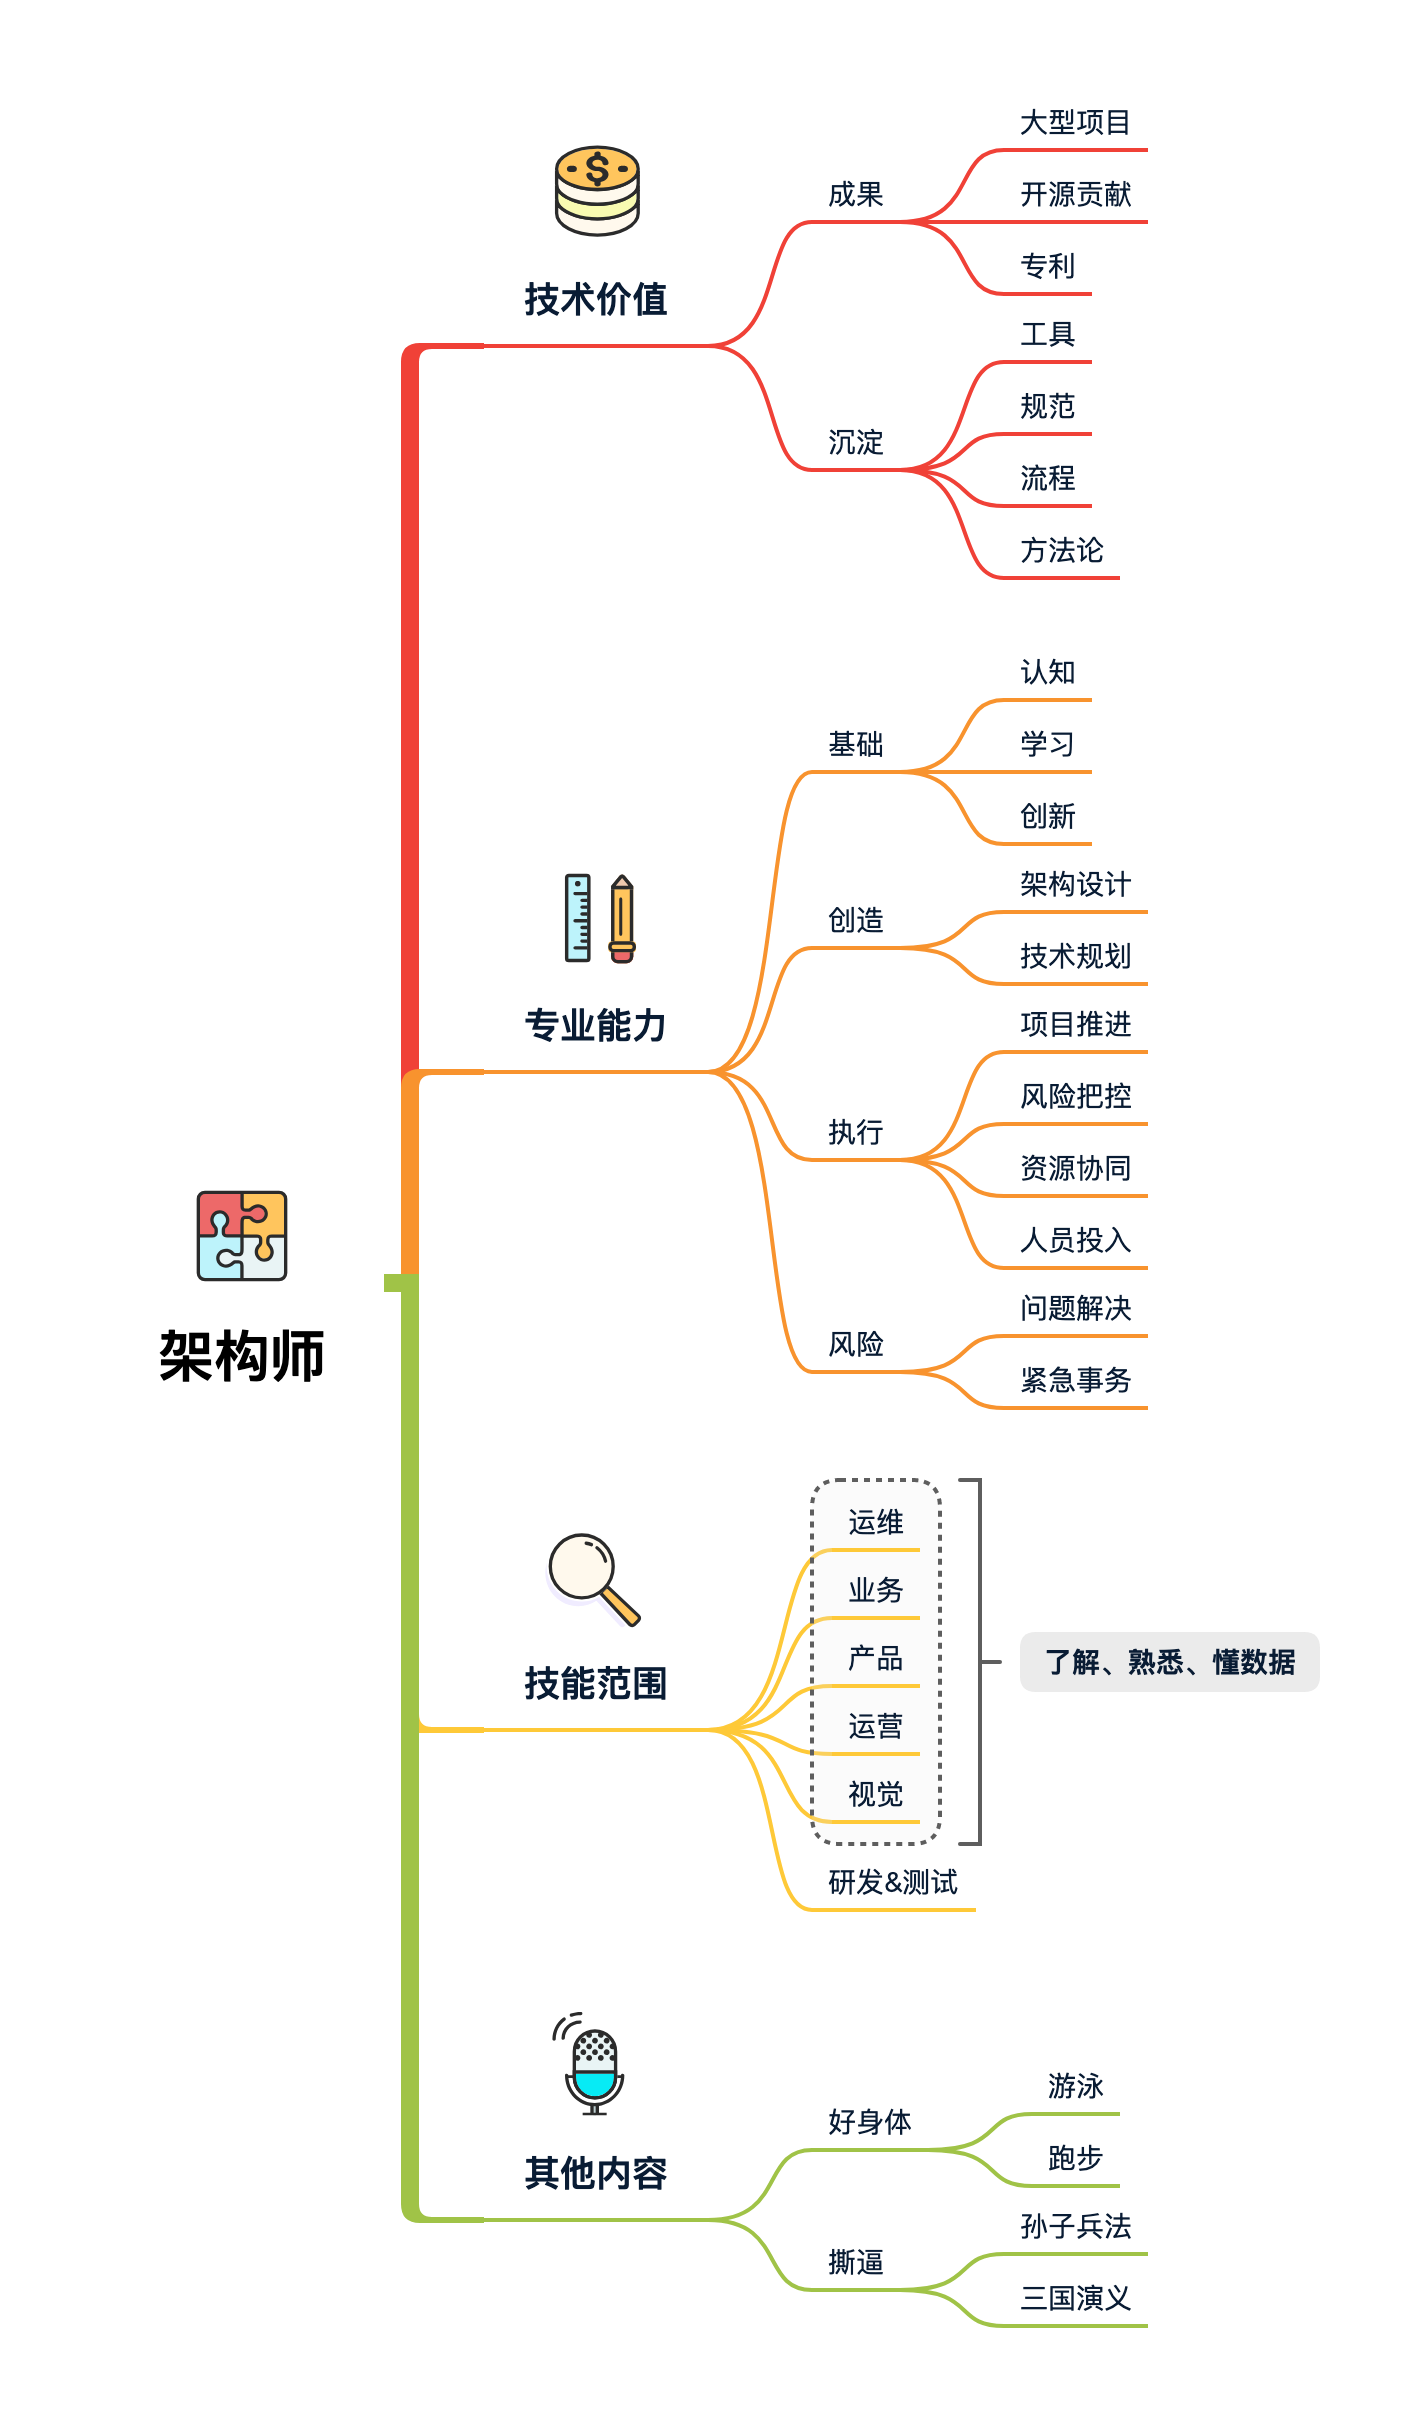 图 14-3 架构师知识体系